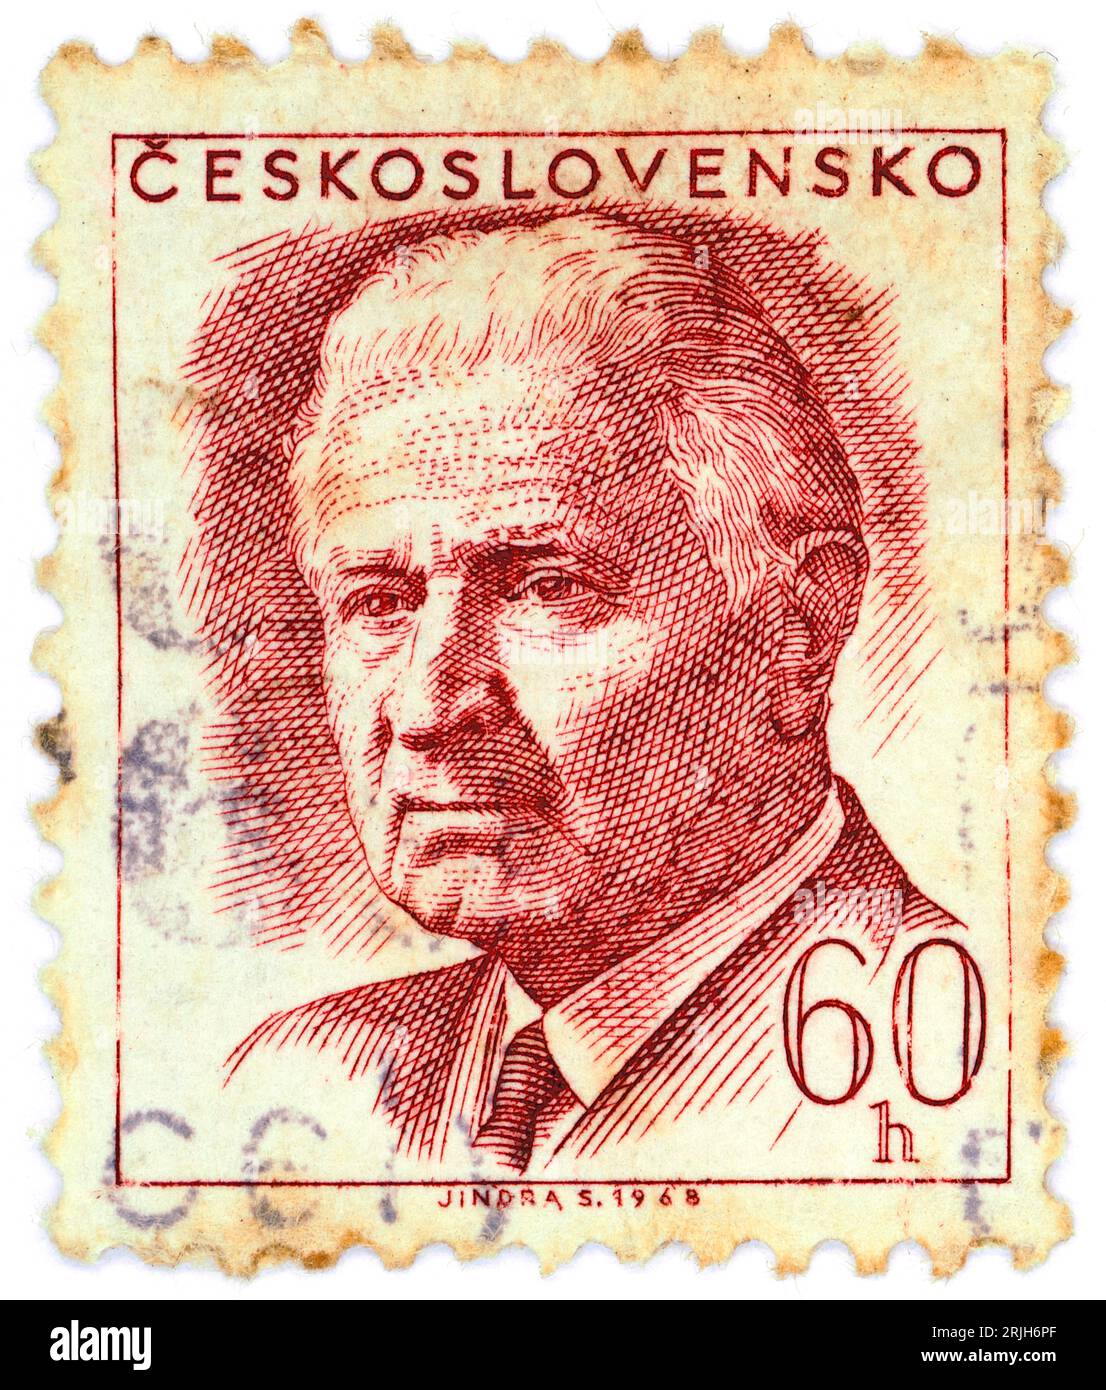 Ludvík Svoboda (1895 – 1979). Timbre-poste émis en Tchécoslovaquie en 1968. Ludvík Svoboda était un général et homme politique tchèque. Il a combattu dans les deux guerres mondiales, pour lesquelles il a été considéré comme un héros national, et il a plus tard servi comme président de la Tchécoslovaquie de 1968 à 1975. Banque D'Images